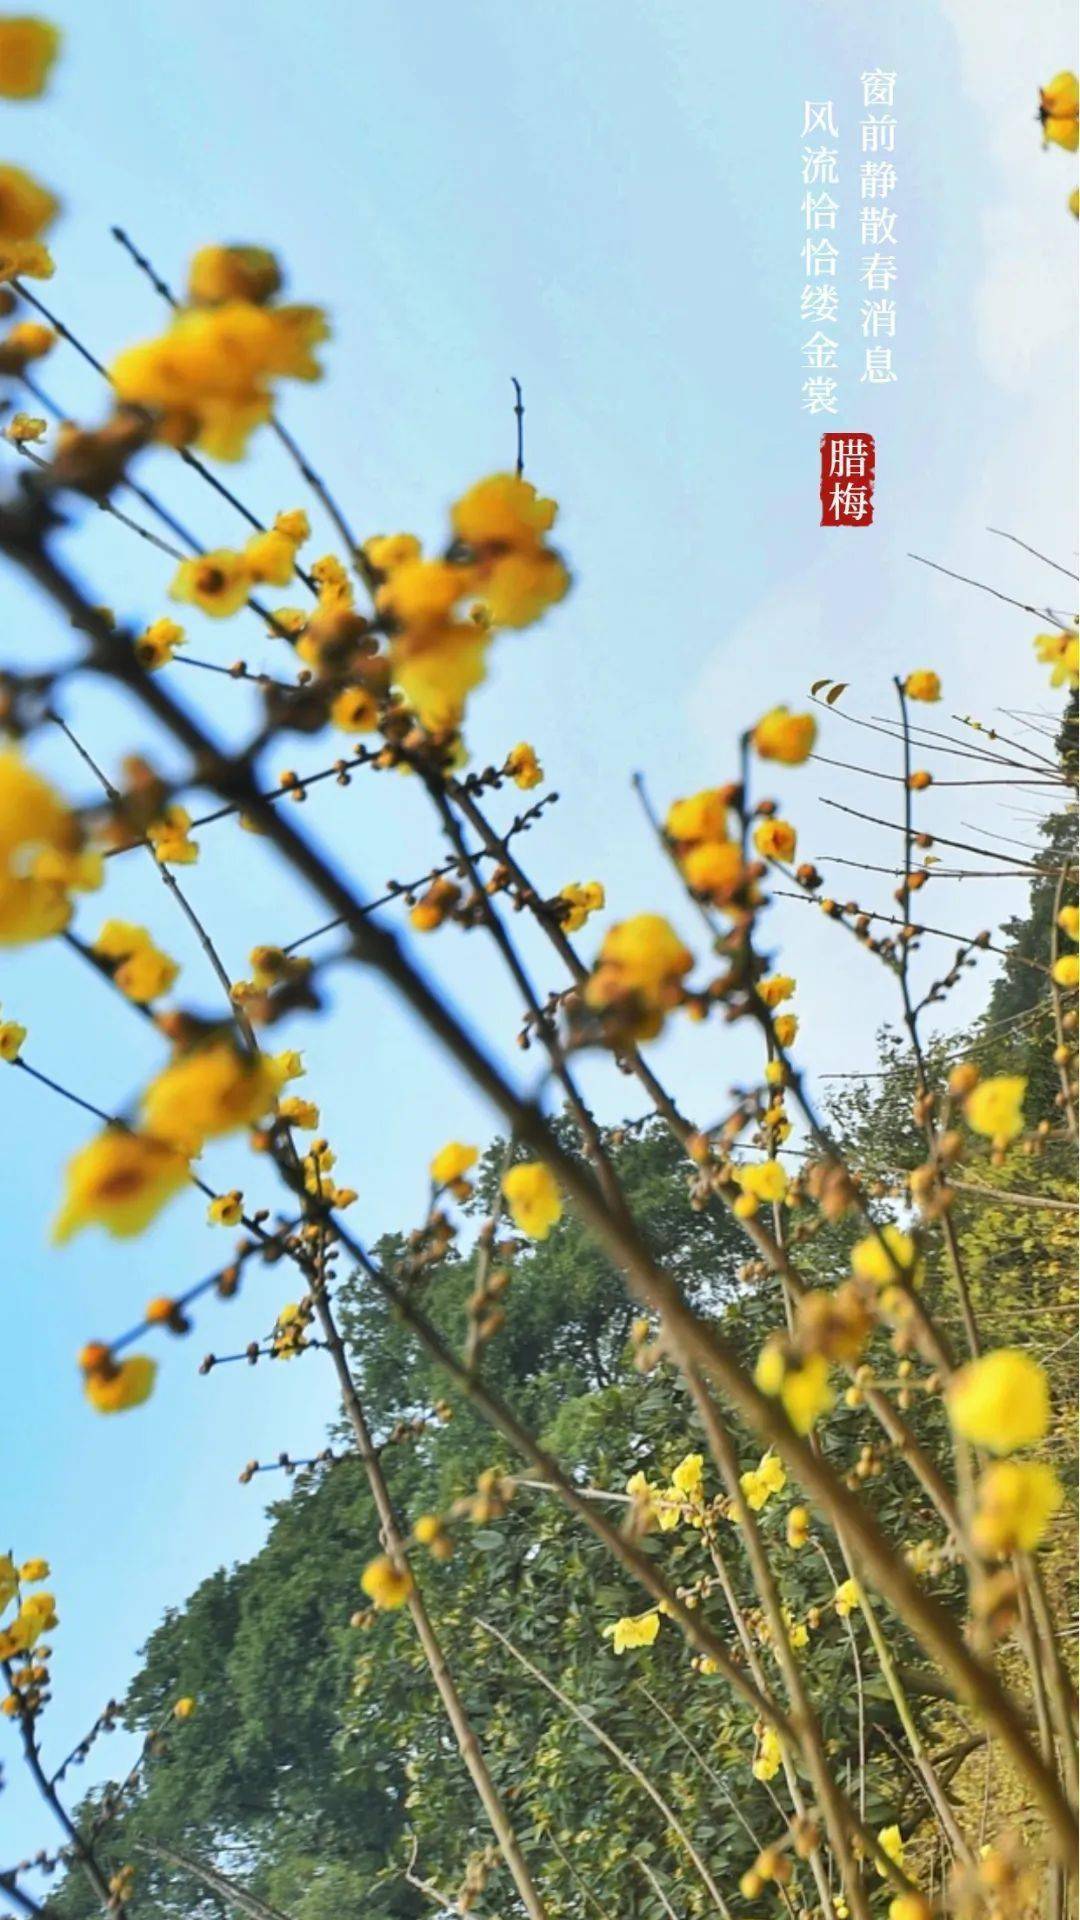 枝头|寒梅傲雪|重庆南山暗香浮动“花袭人”